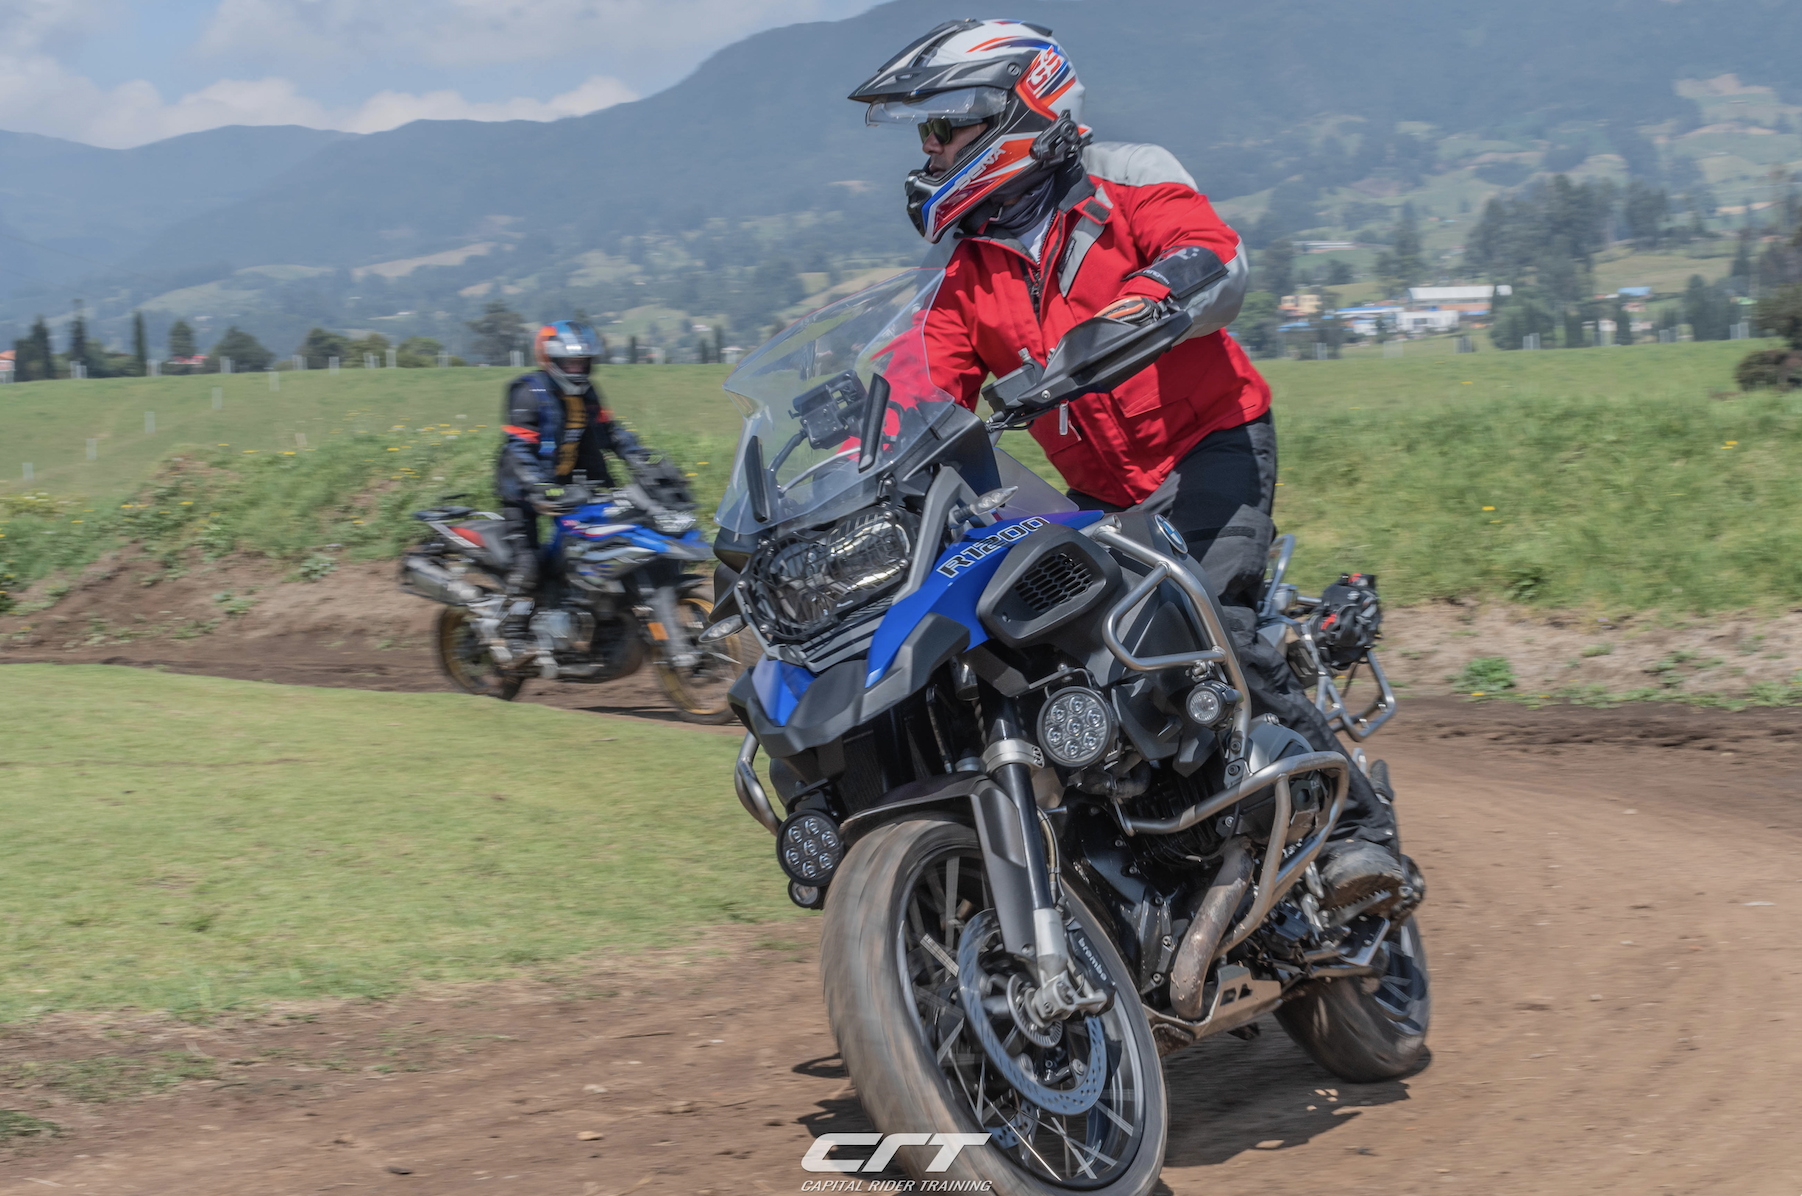 Cursos Offroad Bmw motorrad Colombia, capital rider, r1250gs